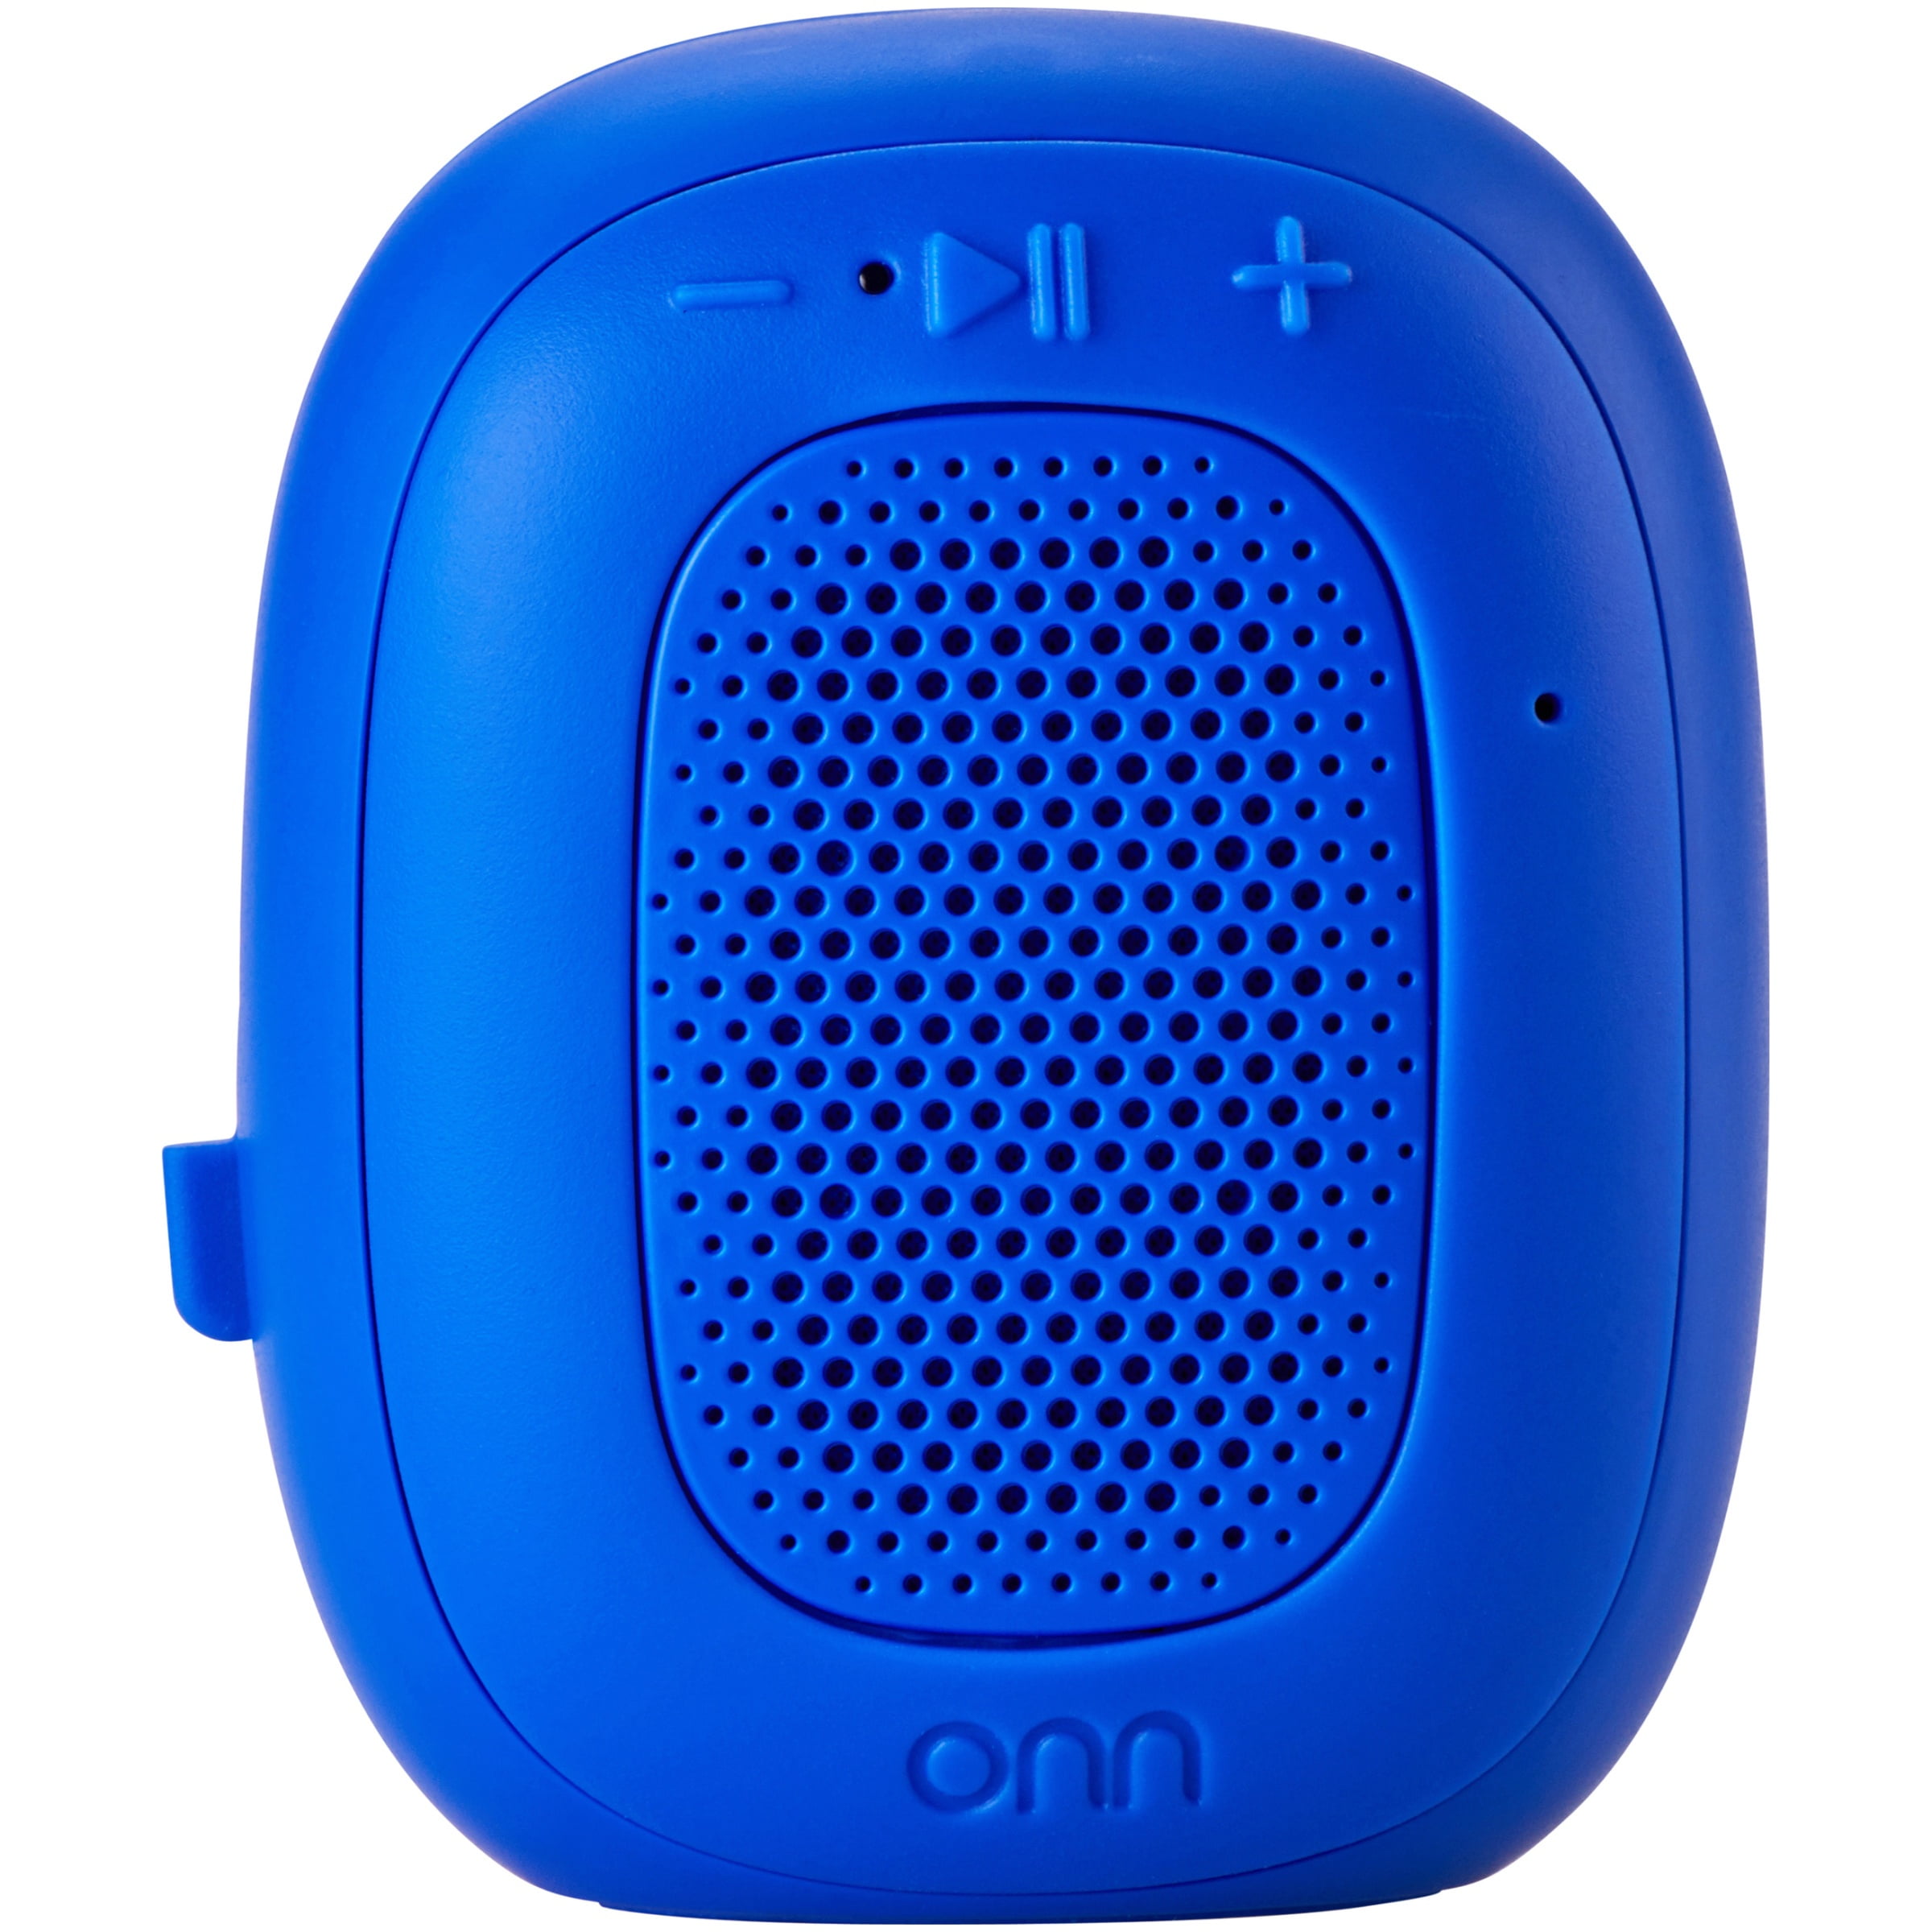 onn bluetooth speaker